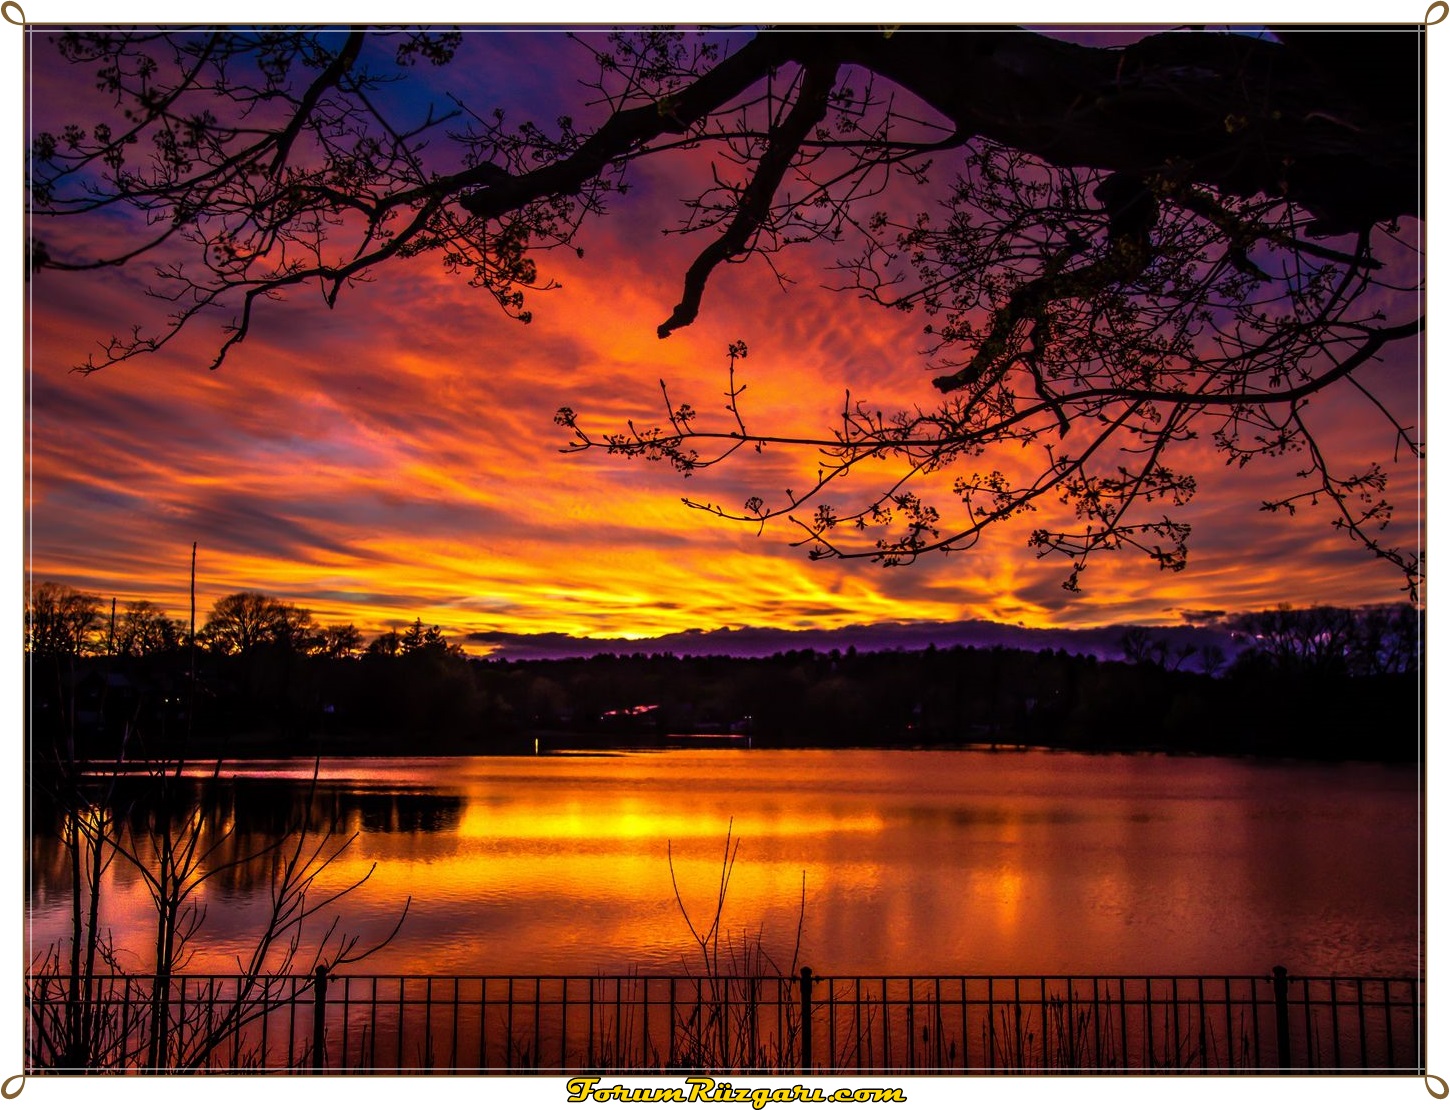 lake_sunset_dusk_148621_1400x1050.jpg